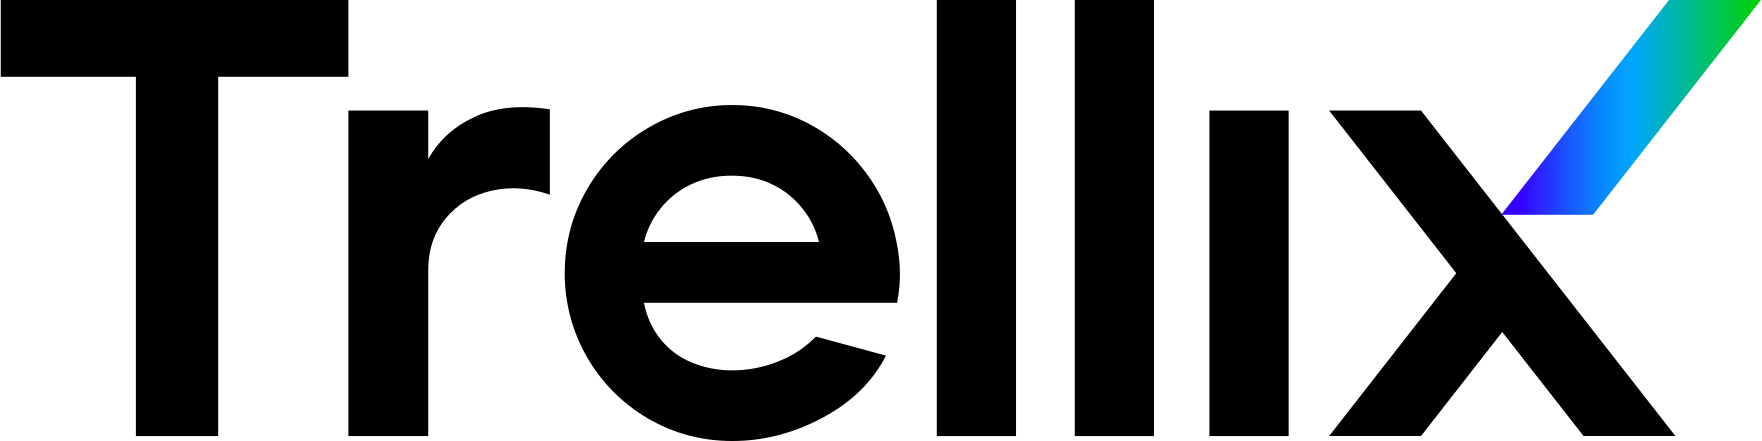 Trellix Logo